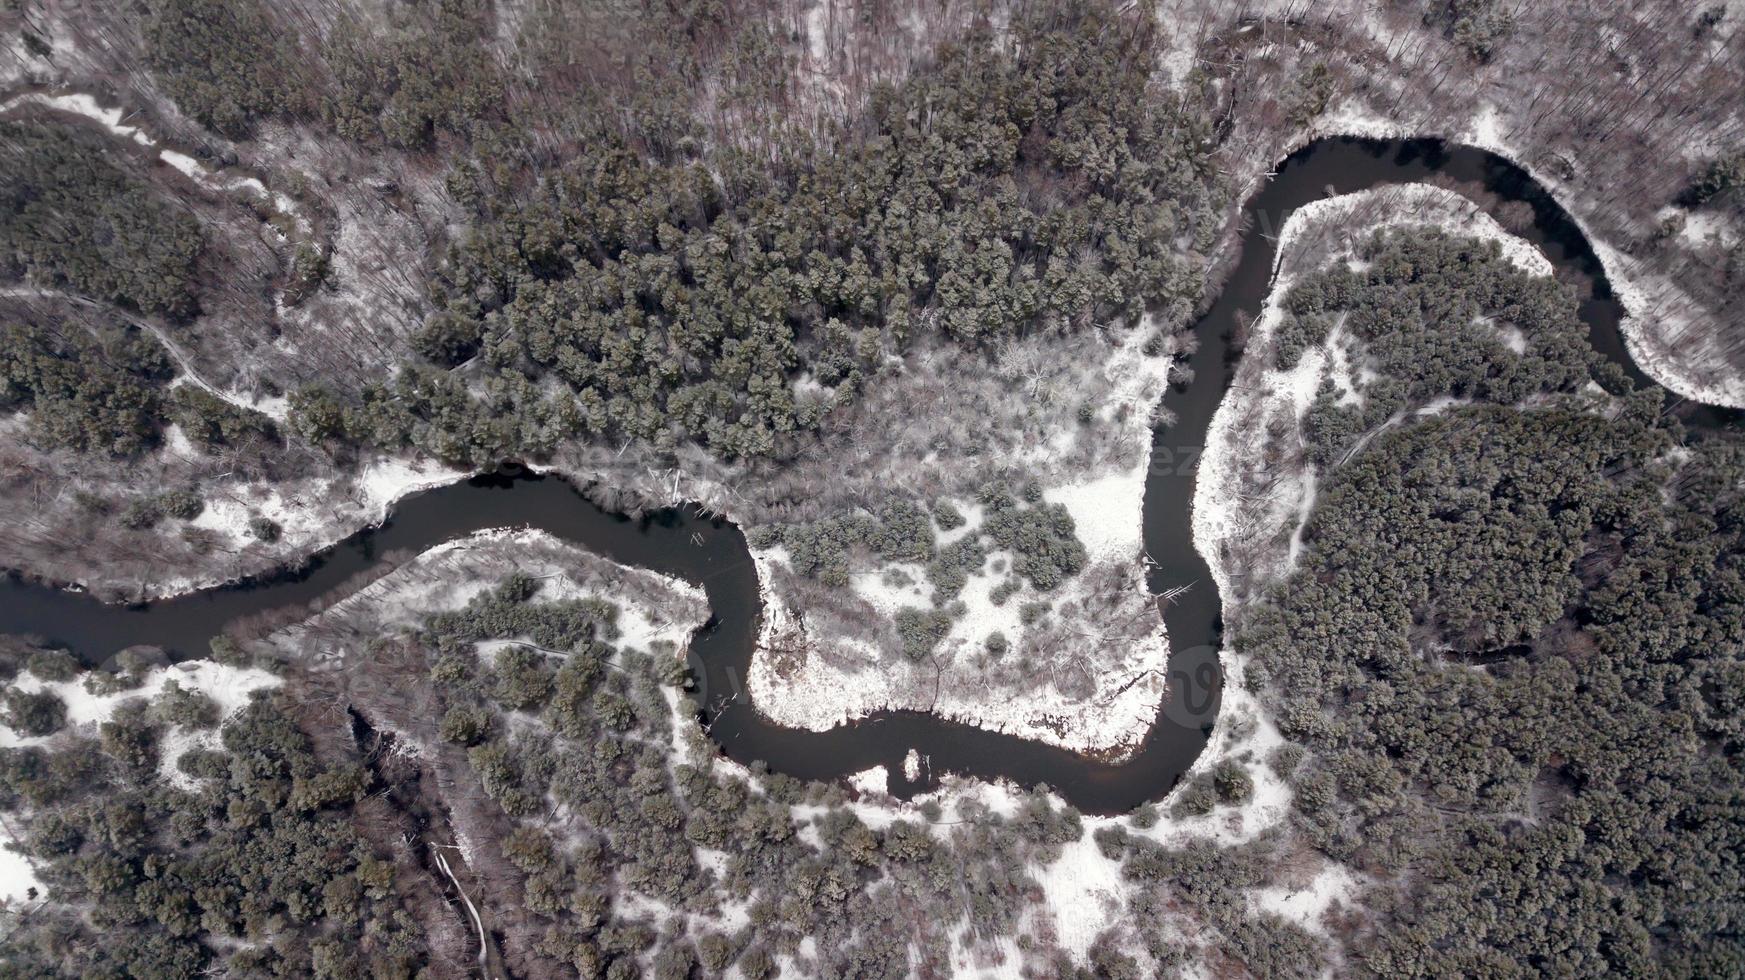 fiume nella foresta d'inverno. fotografia aerea con quadrirotore foto